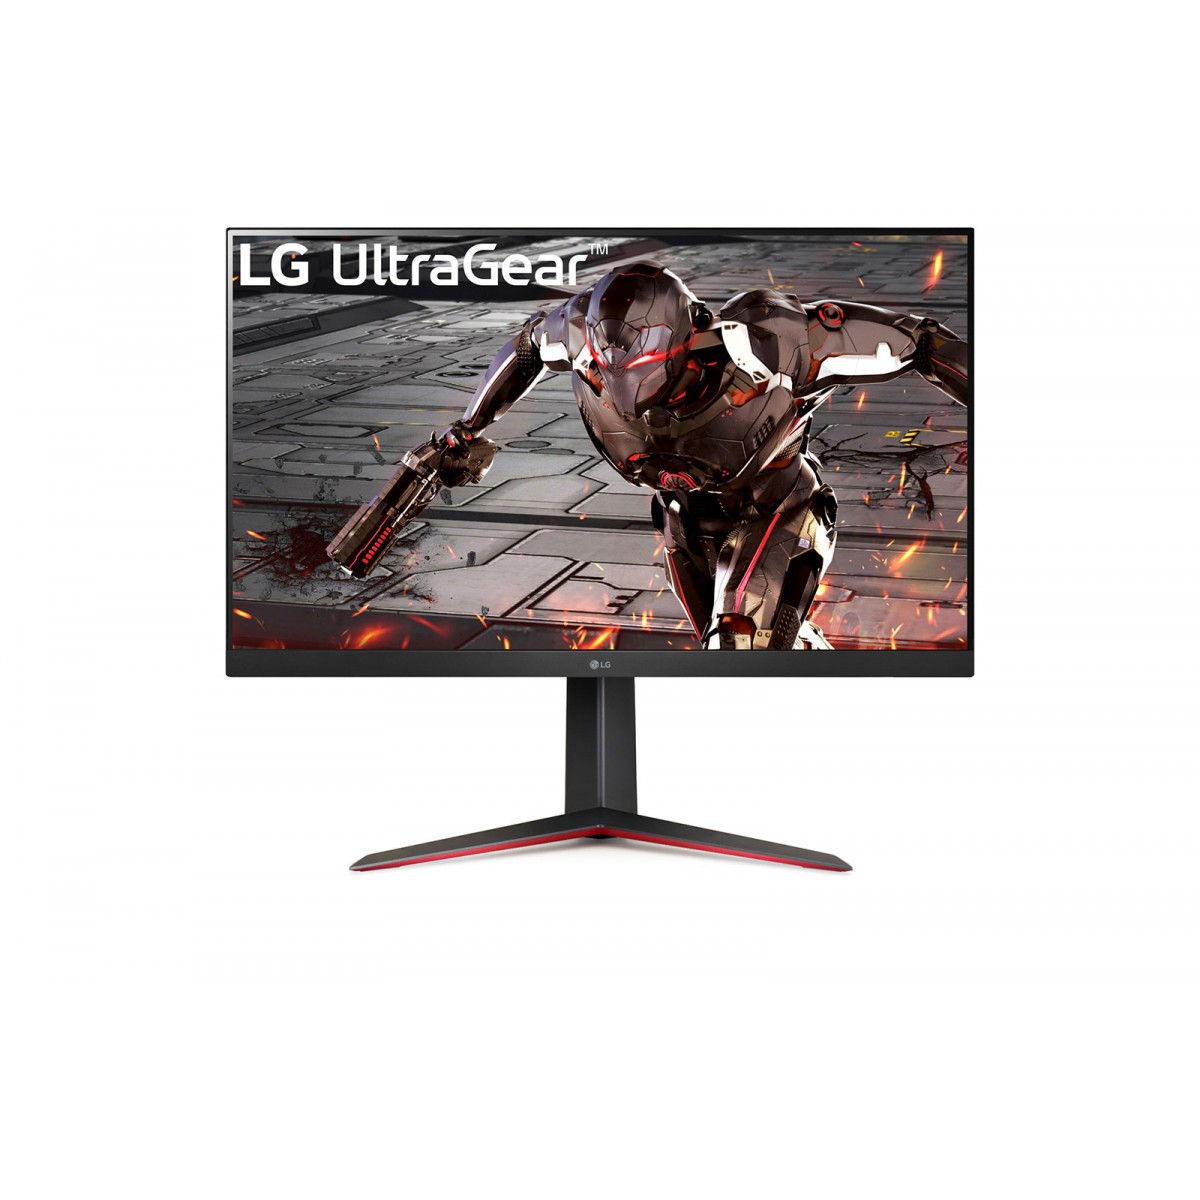 LG 32GN650-B - 80 cm (31.5) - 2560 x 1440 pixels - Quad HD - LED - 1 ms - Black - Red